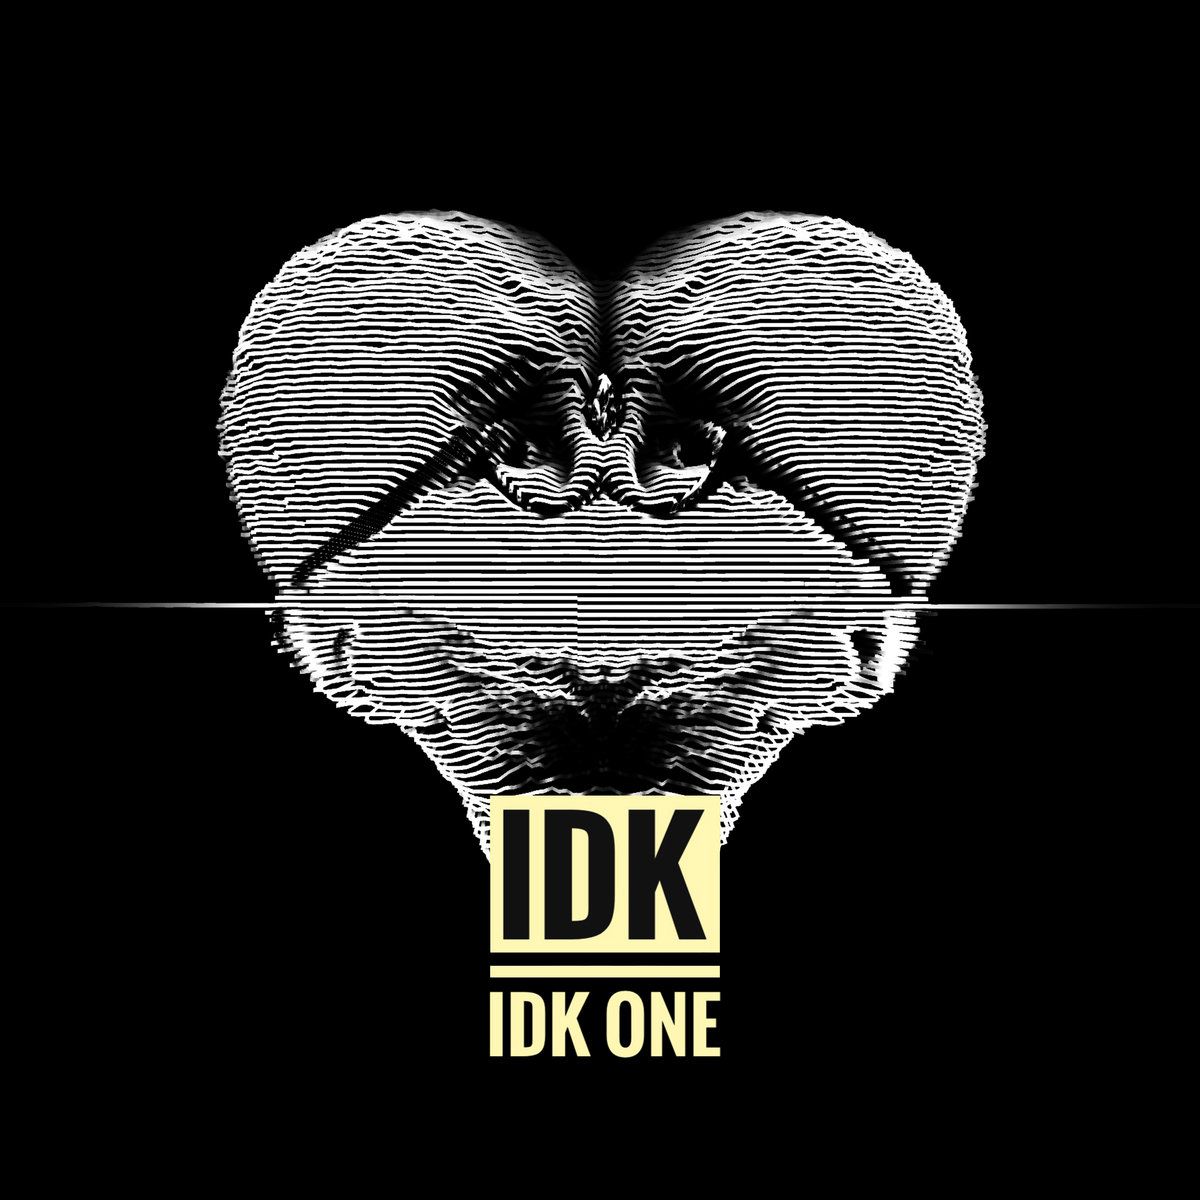 IDK, “IDK One”